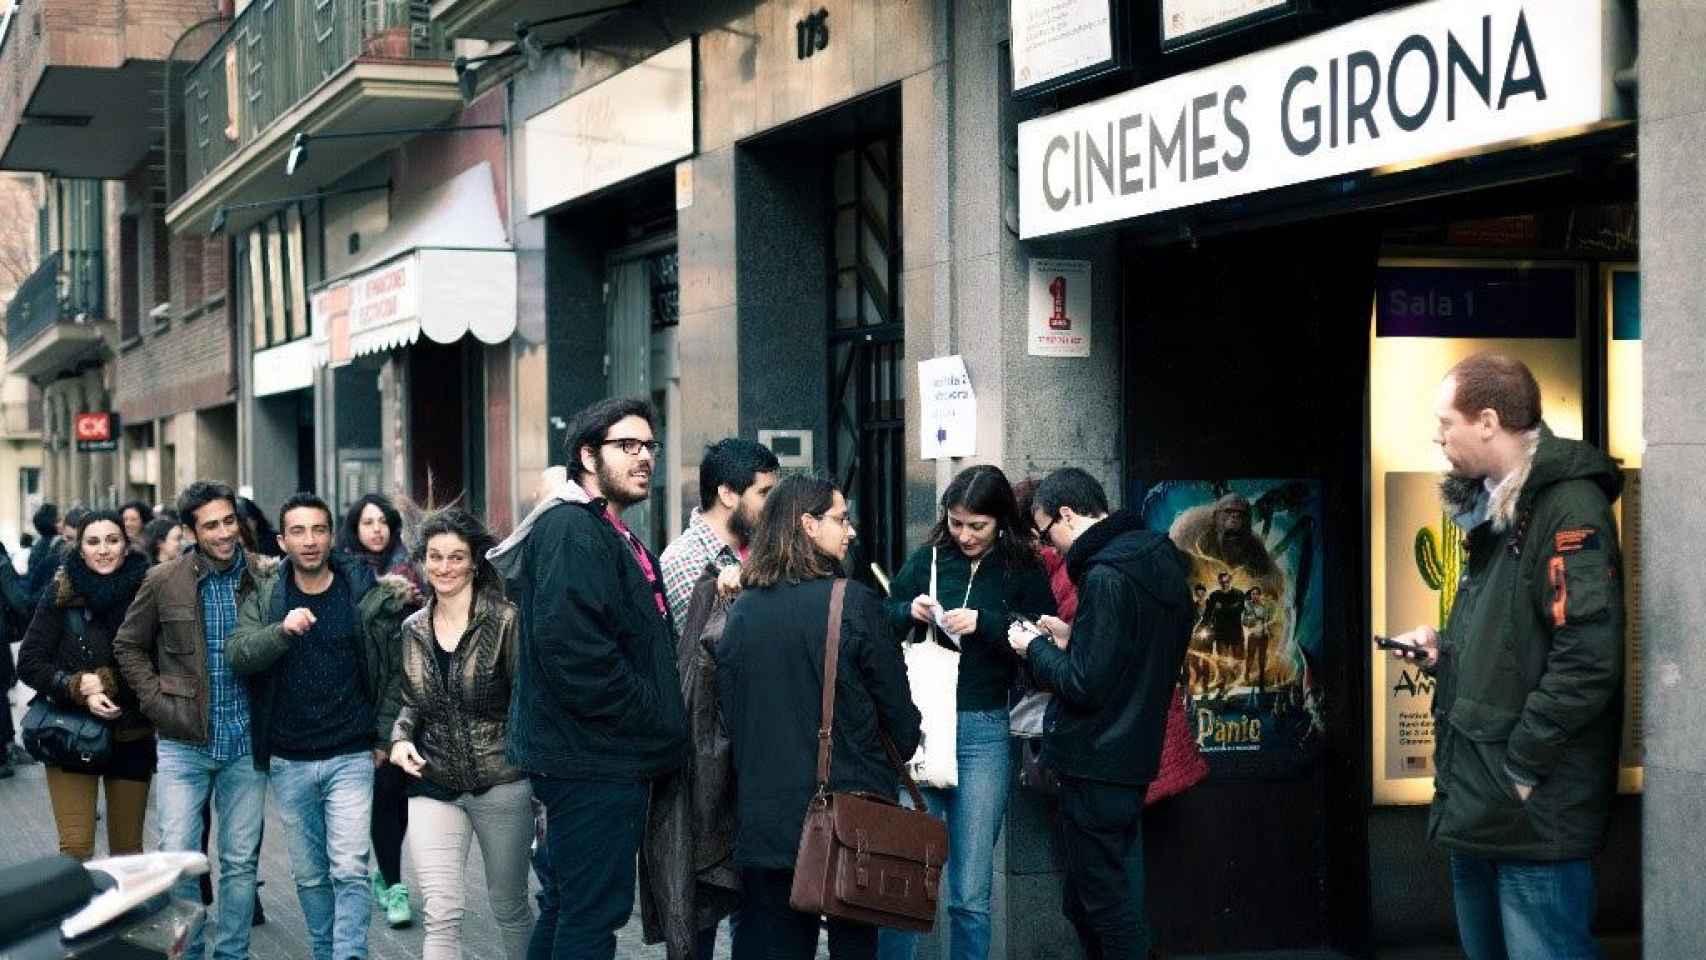 Jóvenes haciendo cola para entrar a los cines Girona